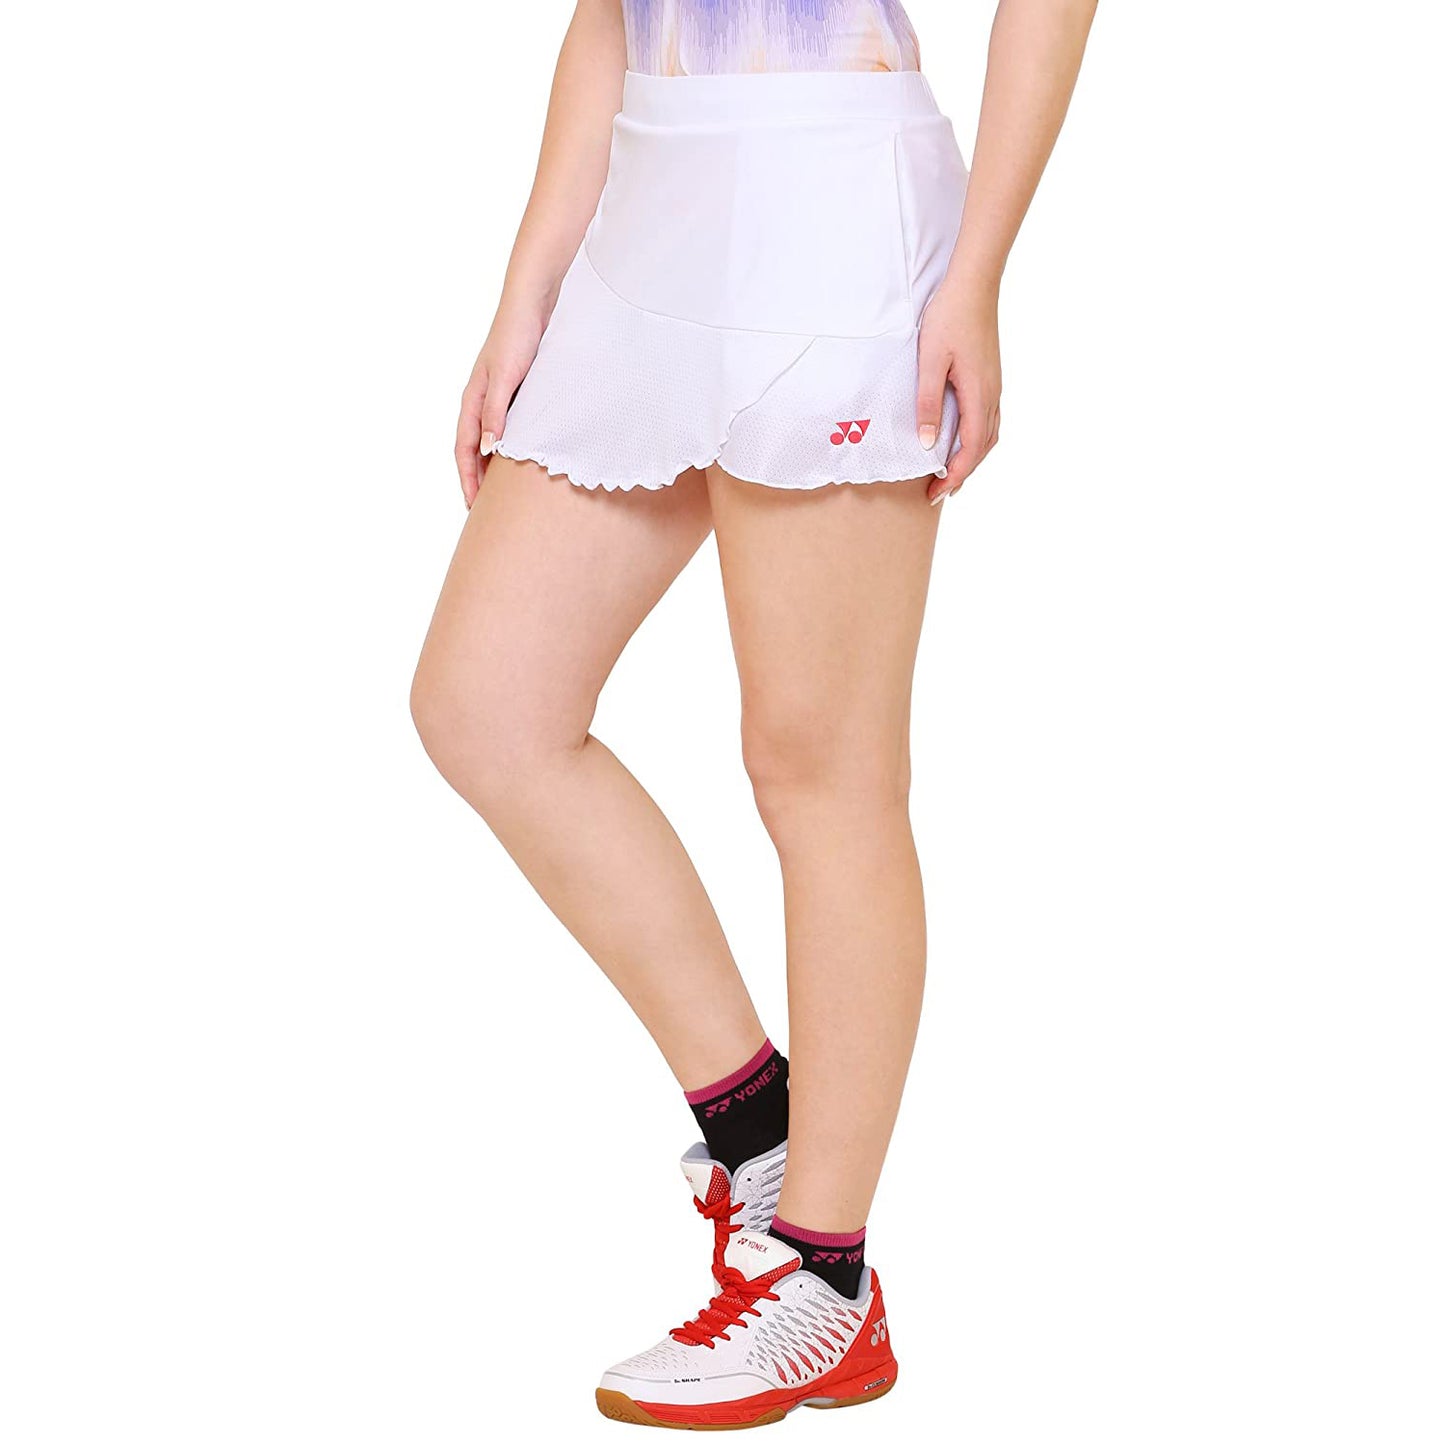 Yonex 26027 Skirt for Women, White - Best Price online Prokicksports.com